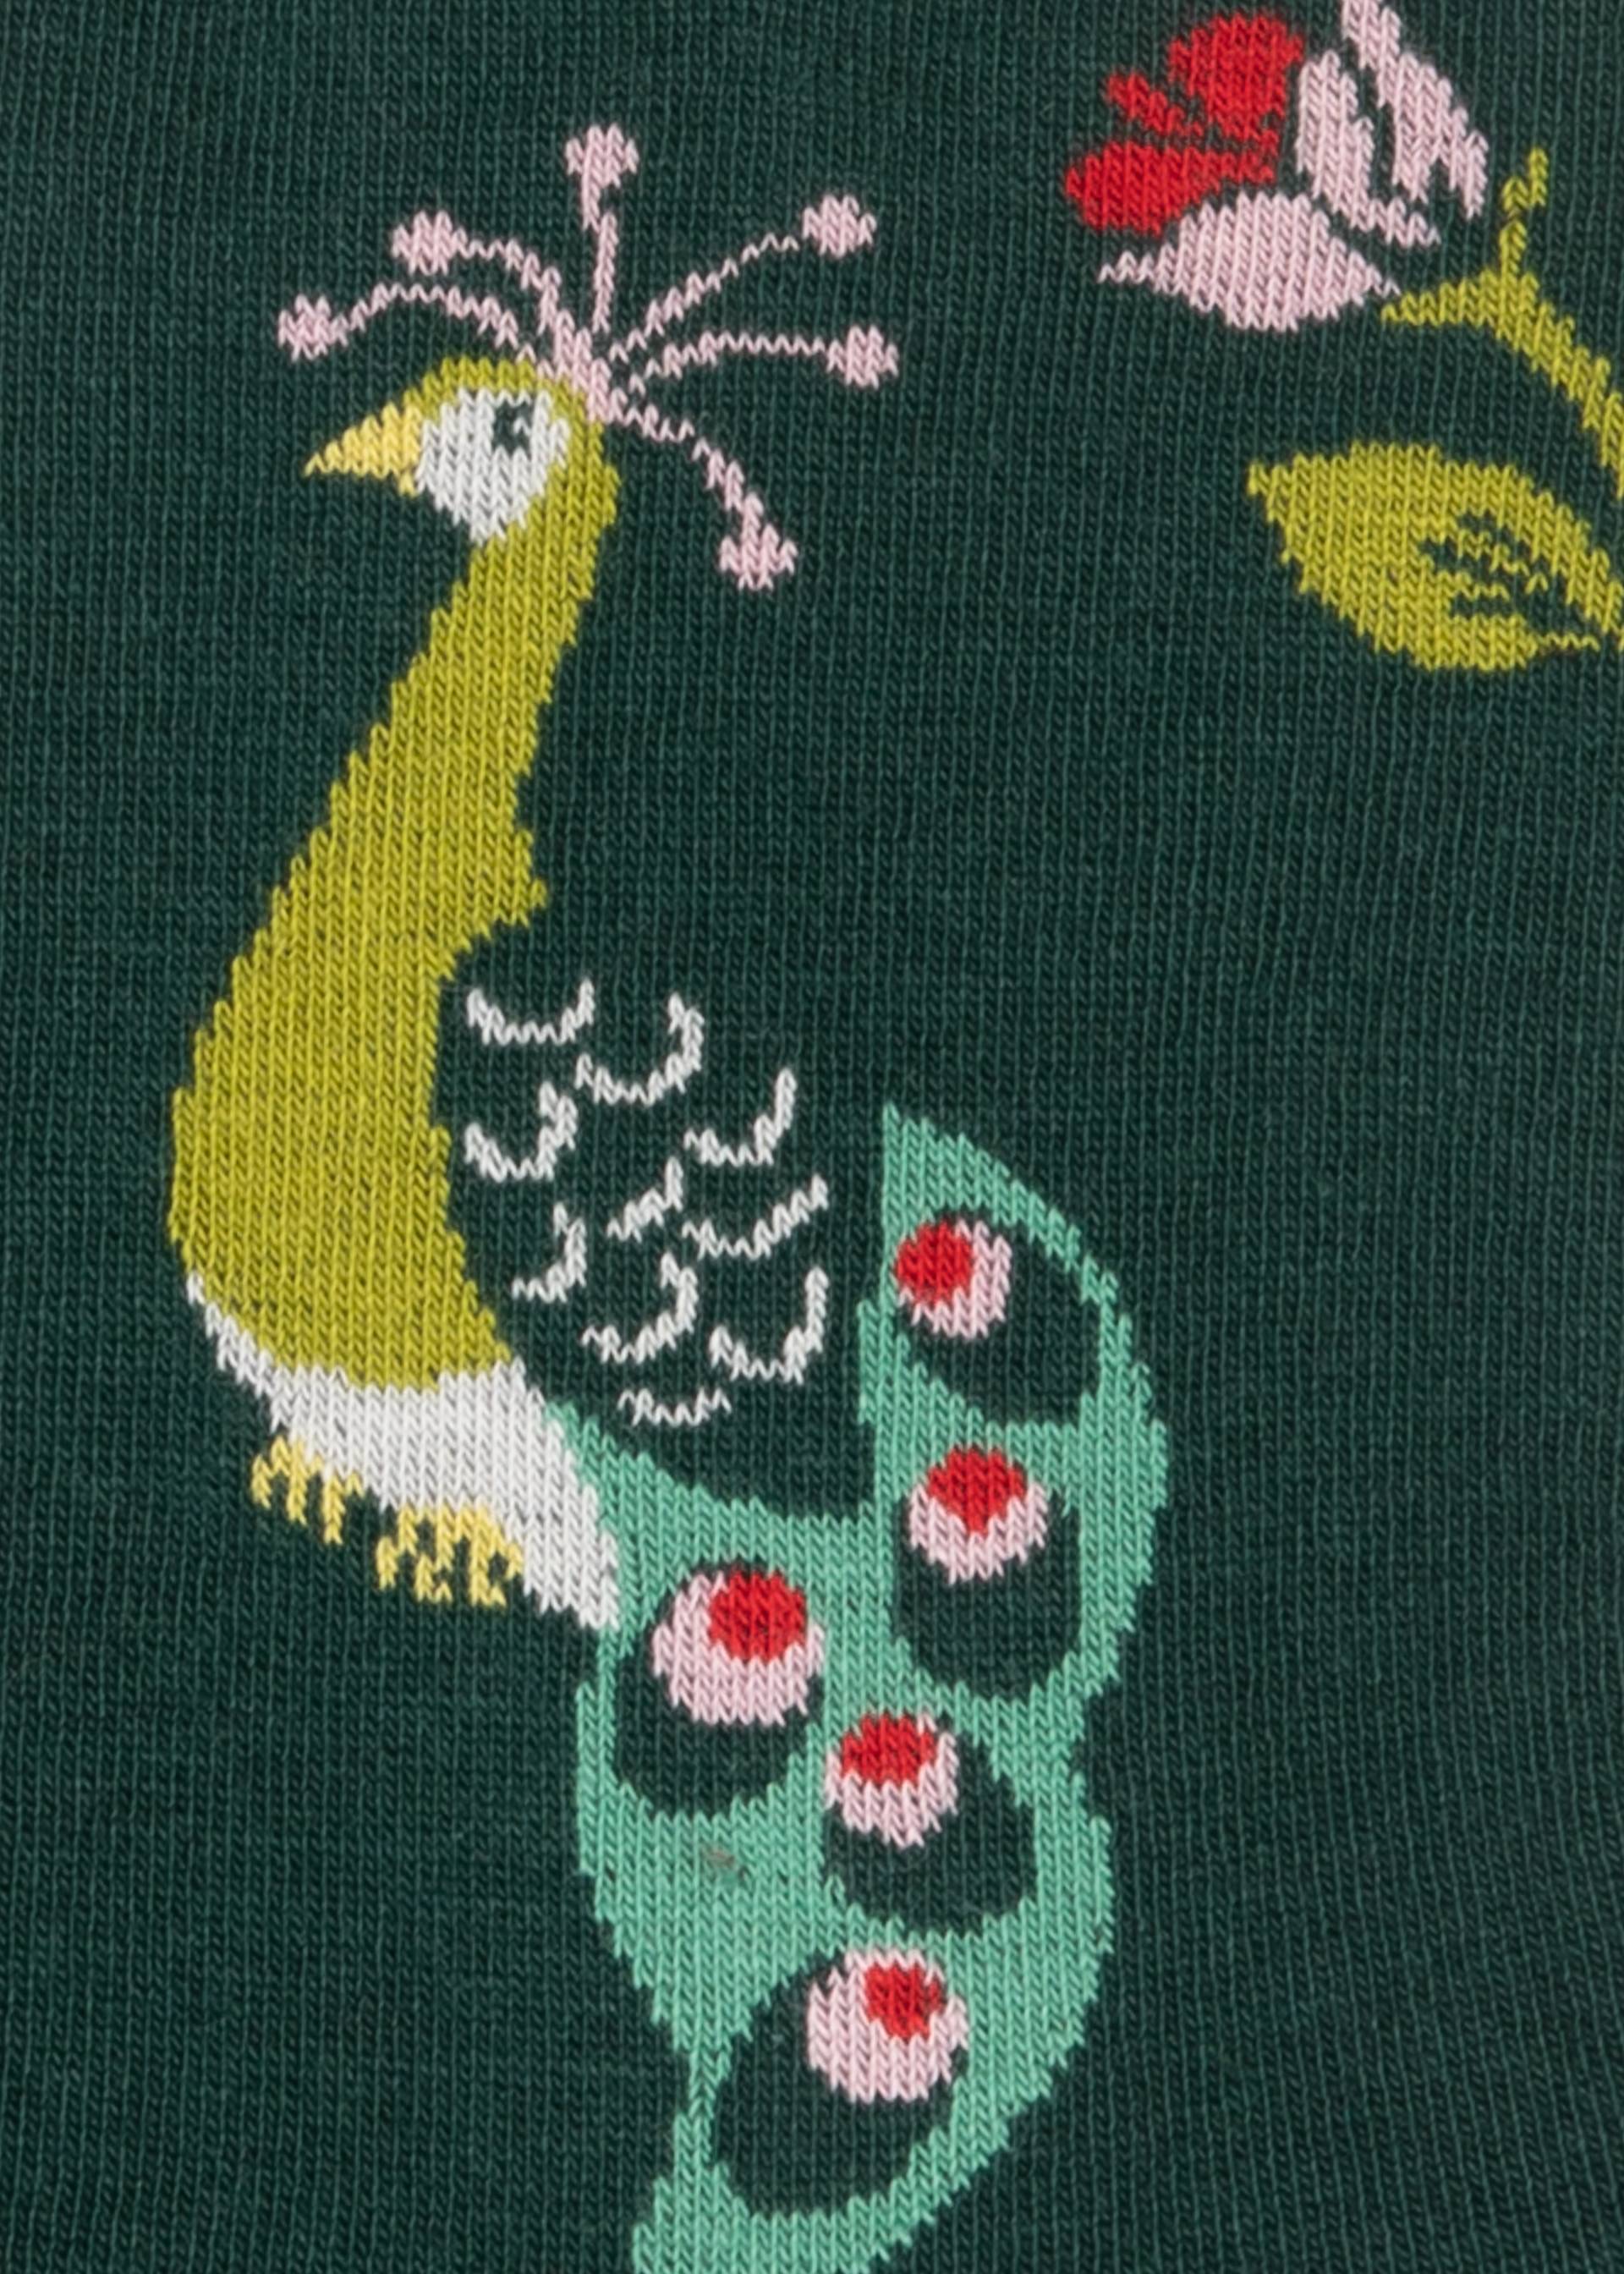 Cotton socks Sensational Steps, peacock love garden, Socks, Green